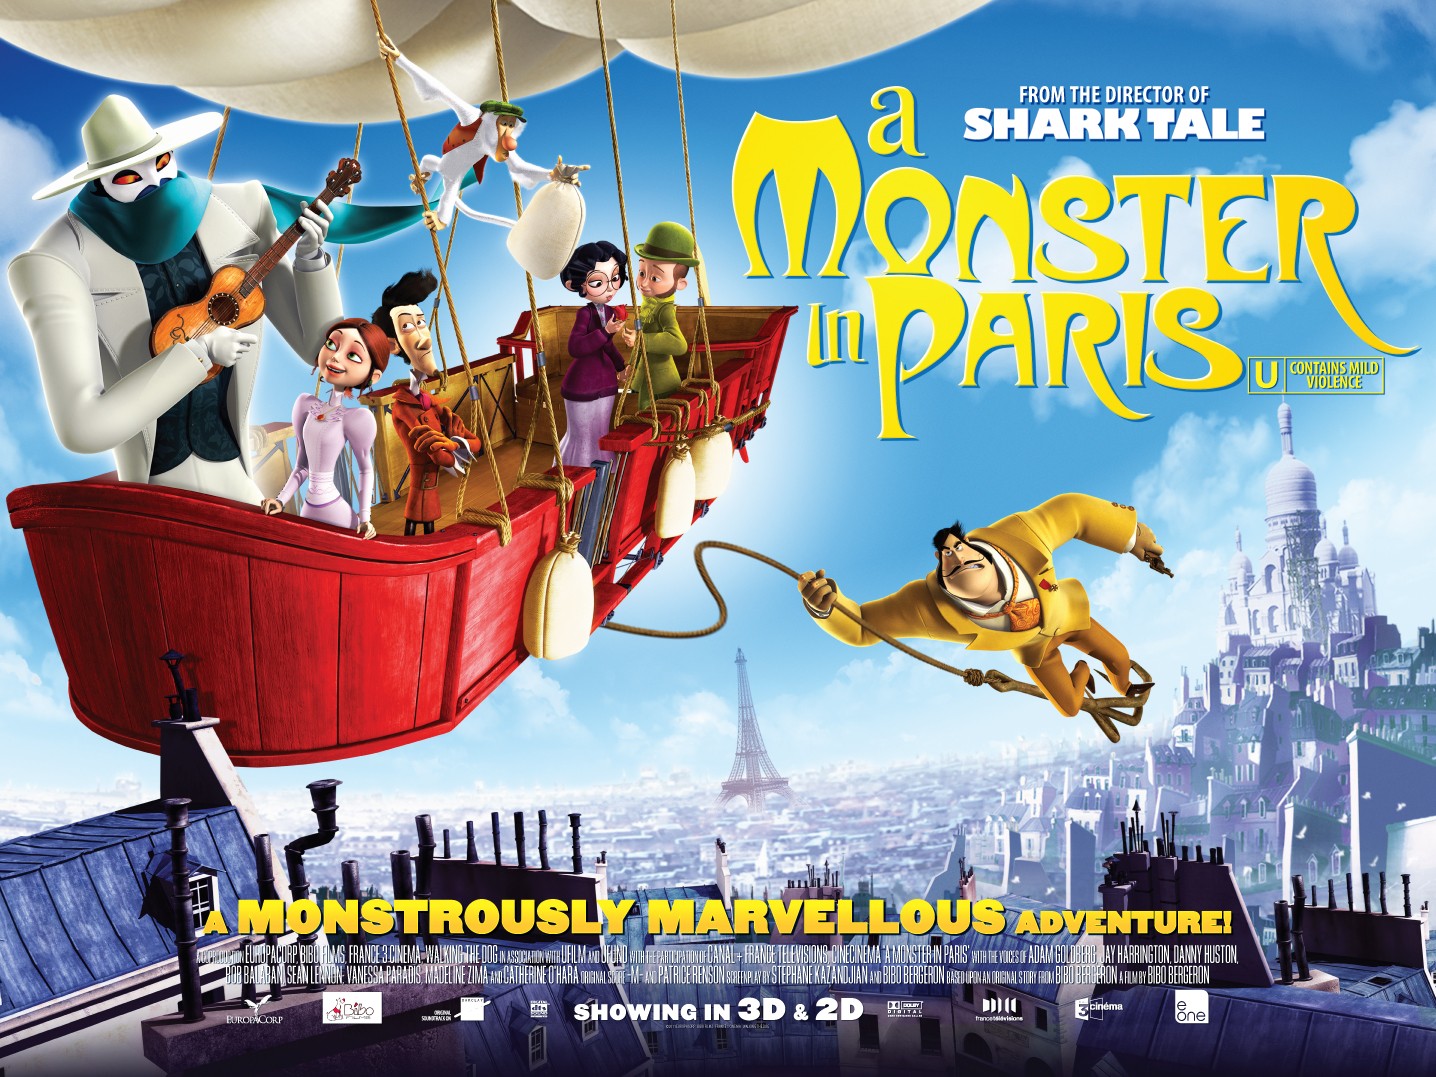 Extra Large Movie Poster Image for Un monstre à Paris (#2 of 3)